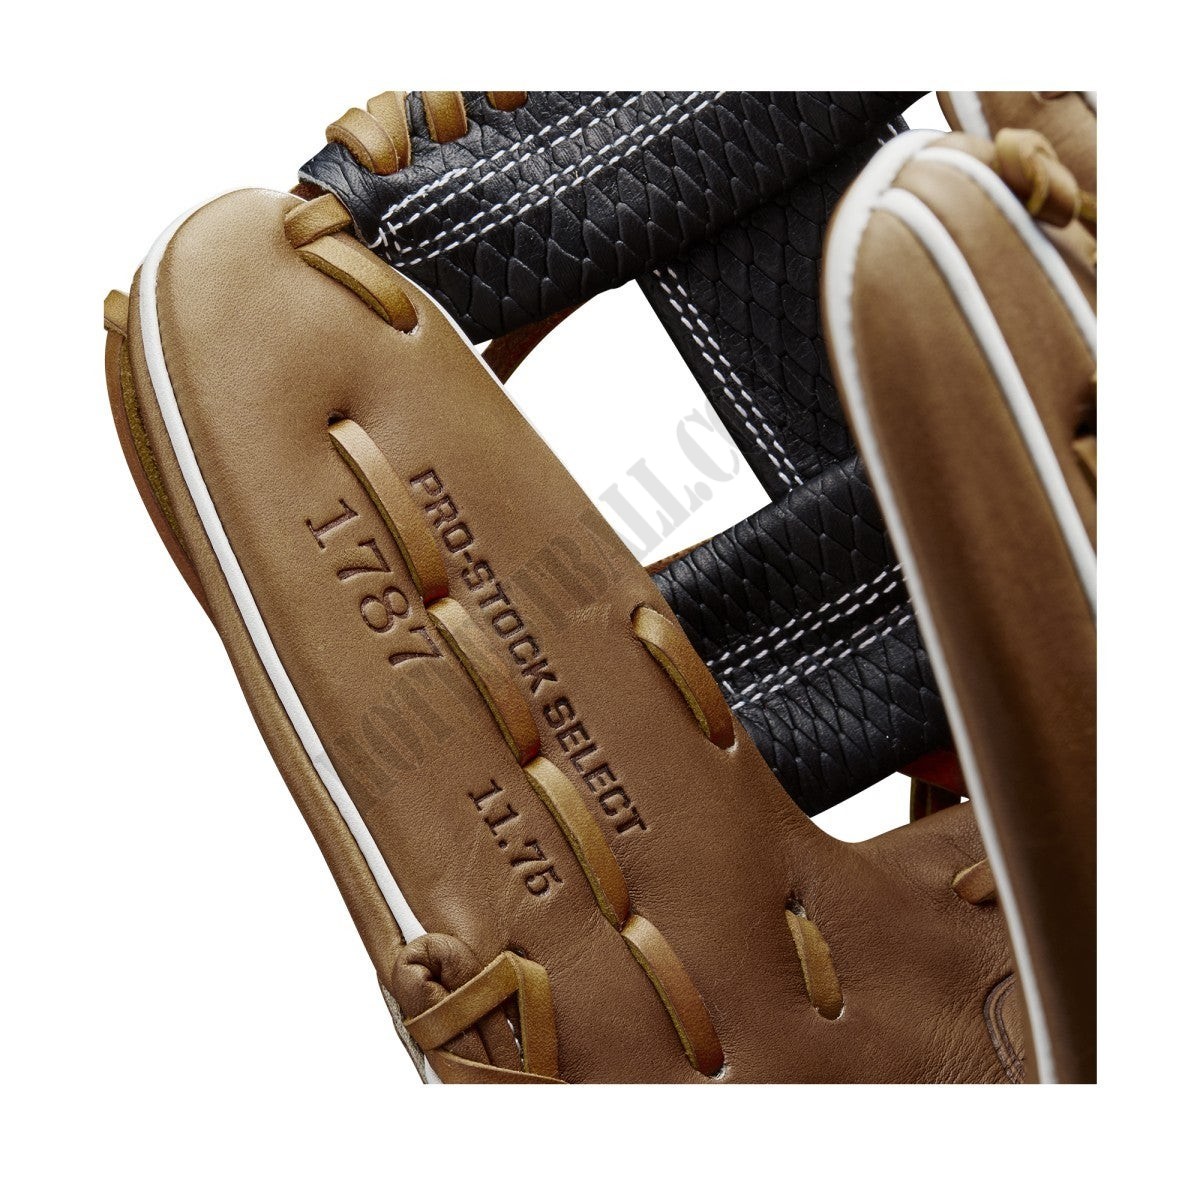 2021 A2K 1787 11.75" Infield Baseball Glove ● Wilson Promotions - -7